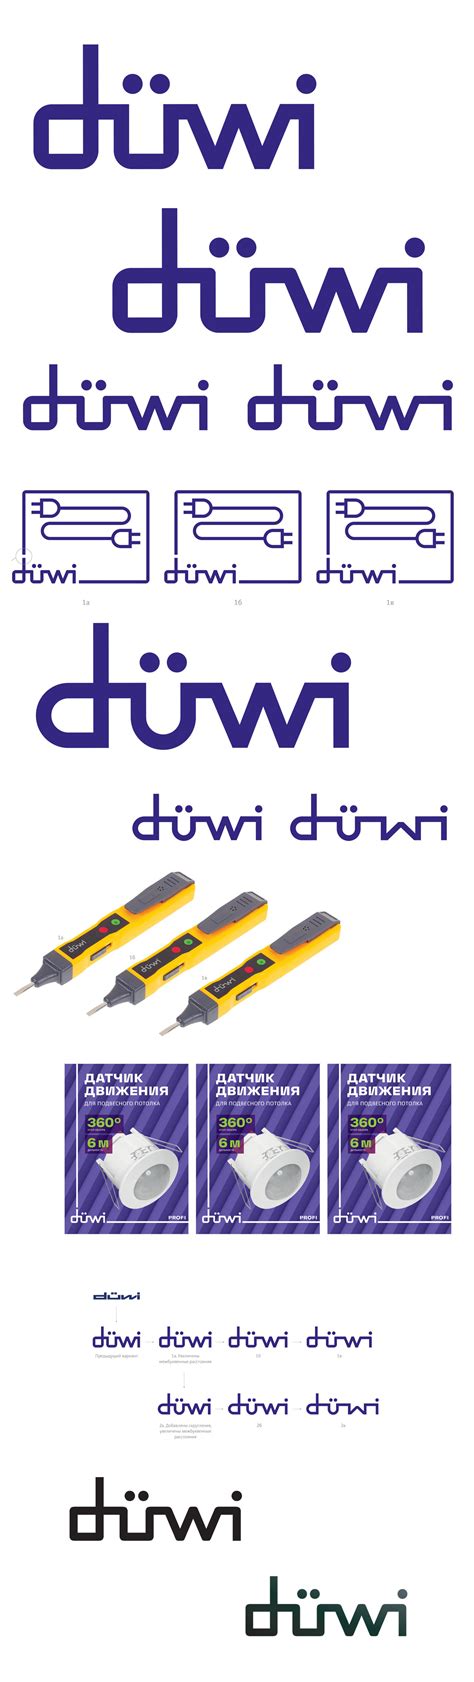 Создание логотипа и айдентики компании Дюви